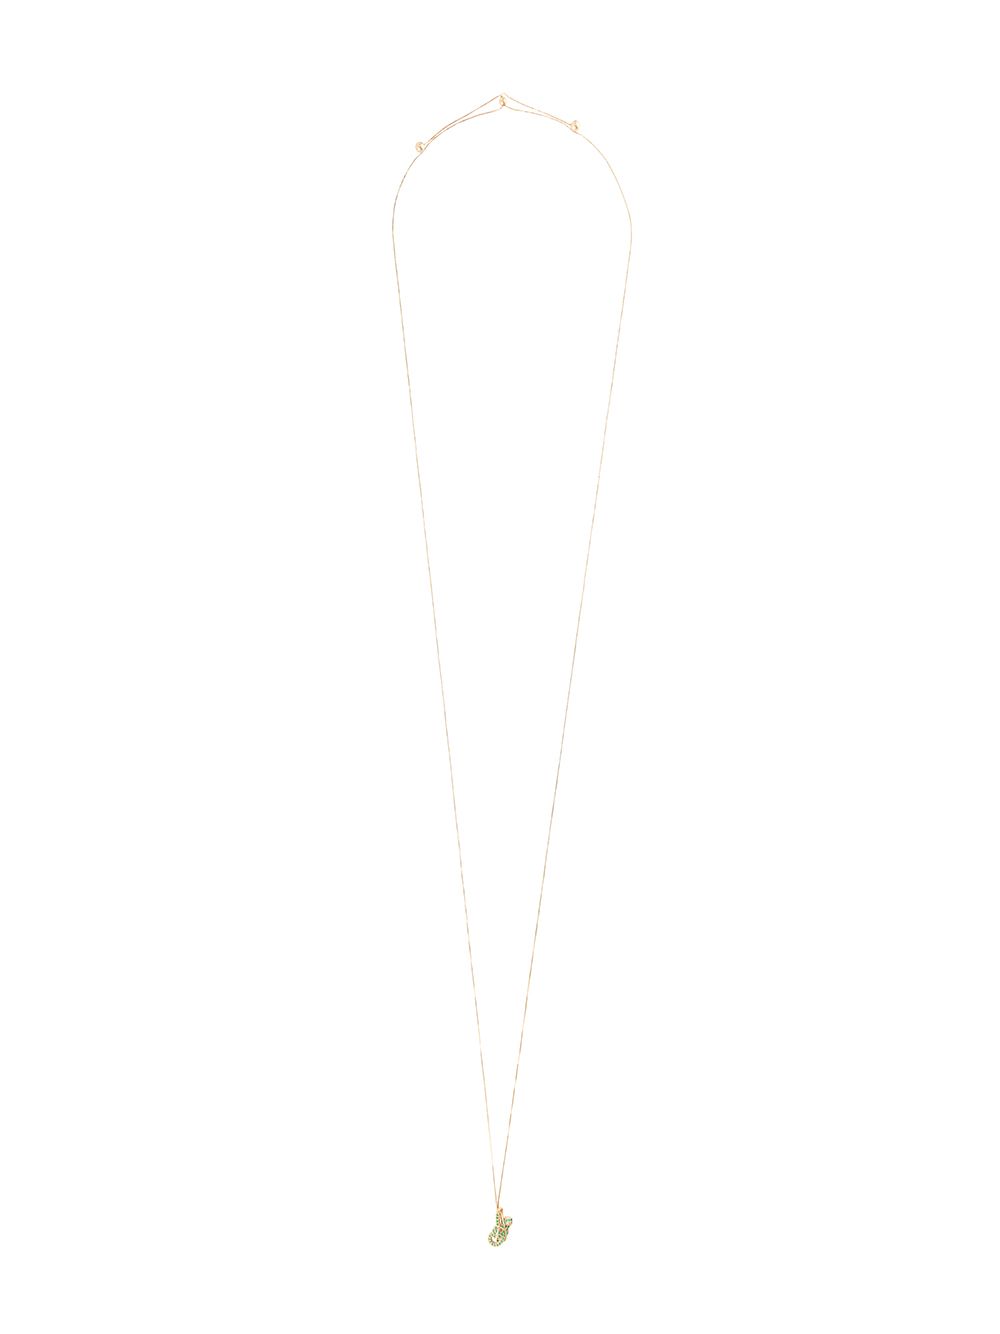 фото Bottega veneta цепочка на шею с кулоном